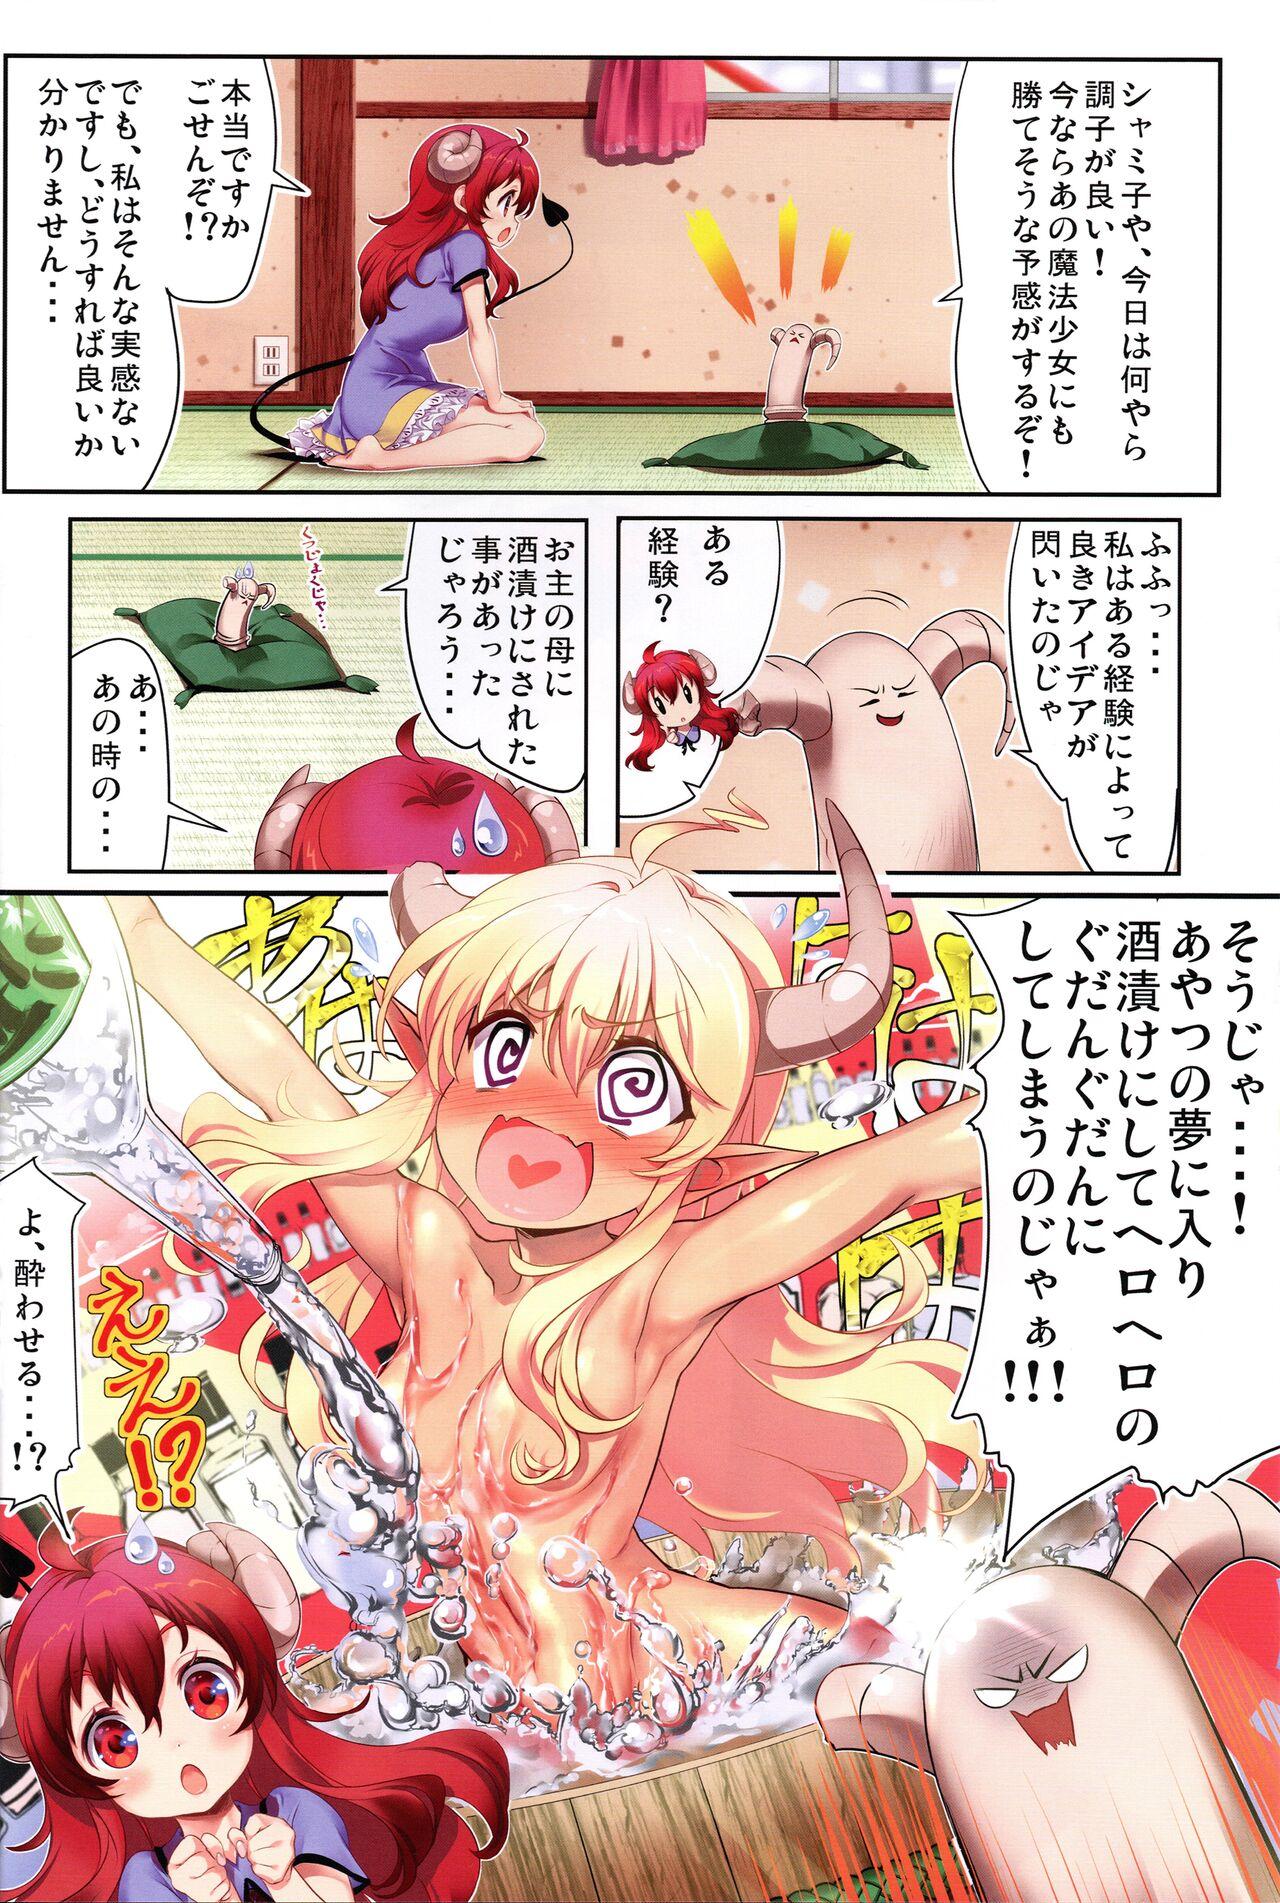 Pack Yume wa Toriatsukai Chuui Nite - Machikado mazoku | the demon girl next door Thylinh - Page 4